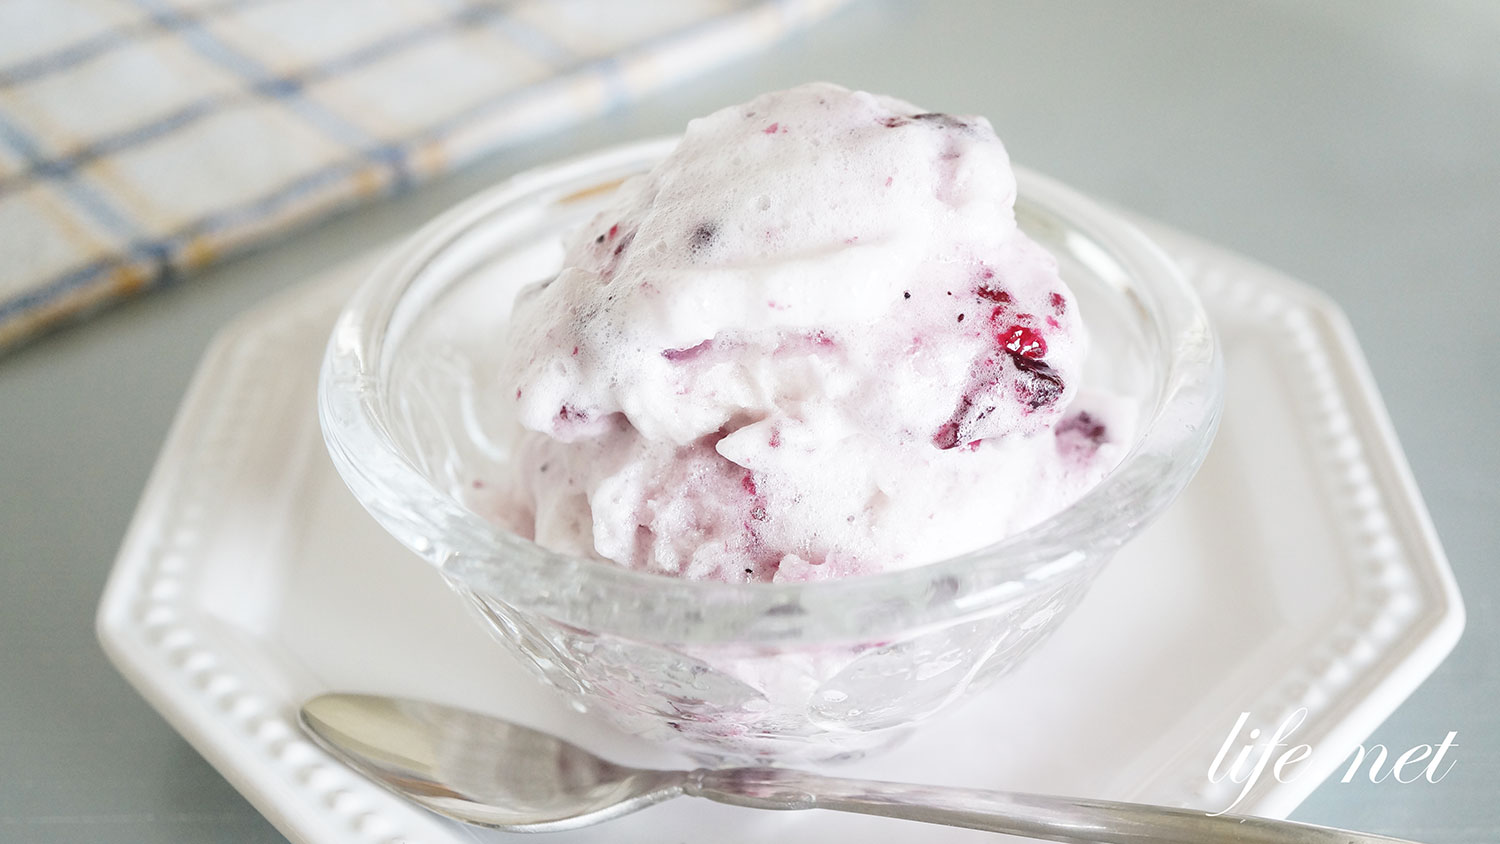 メレンゲアイスの作り方 冷凍すると卵白の泡がアイスクリームに Life Net